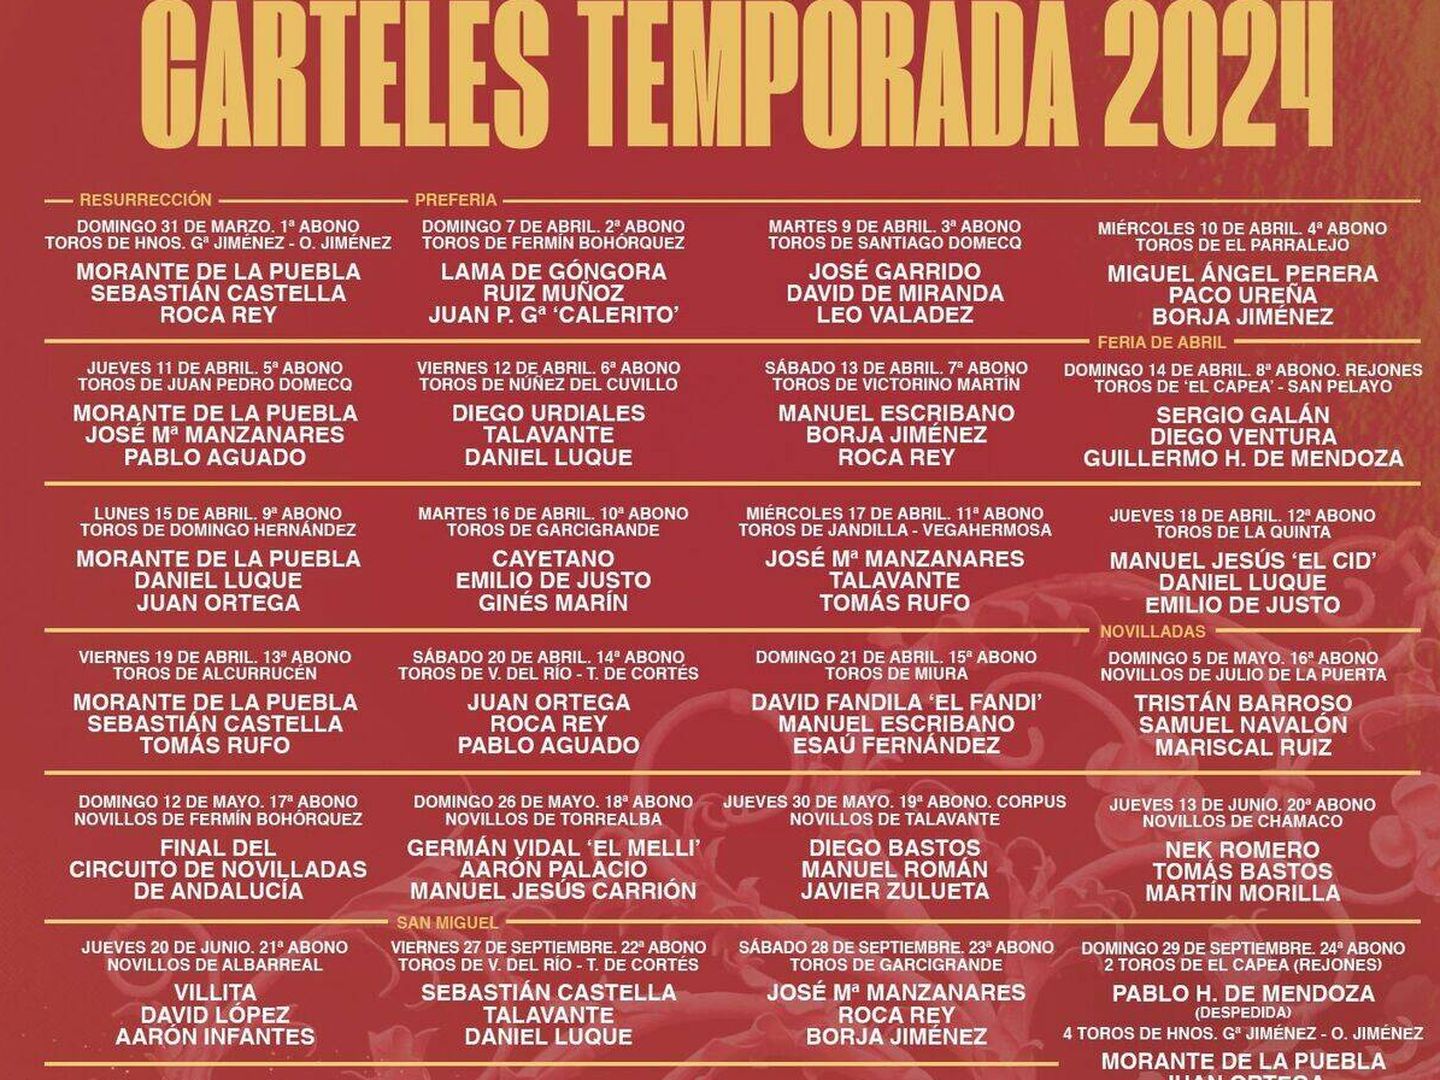 Cartel temporada 2024 (Diario de Sevilla)